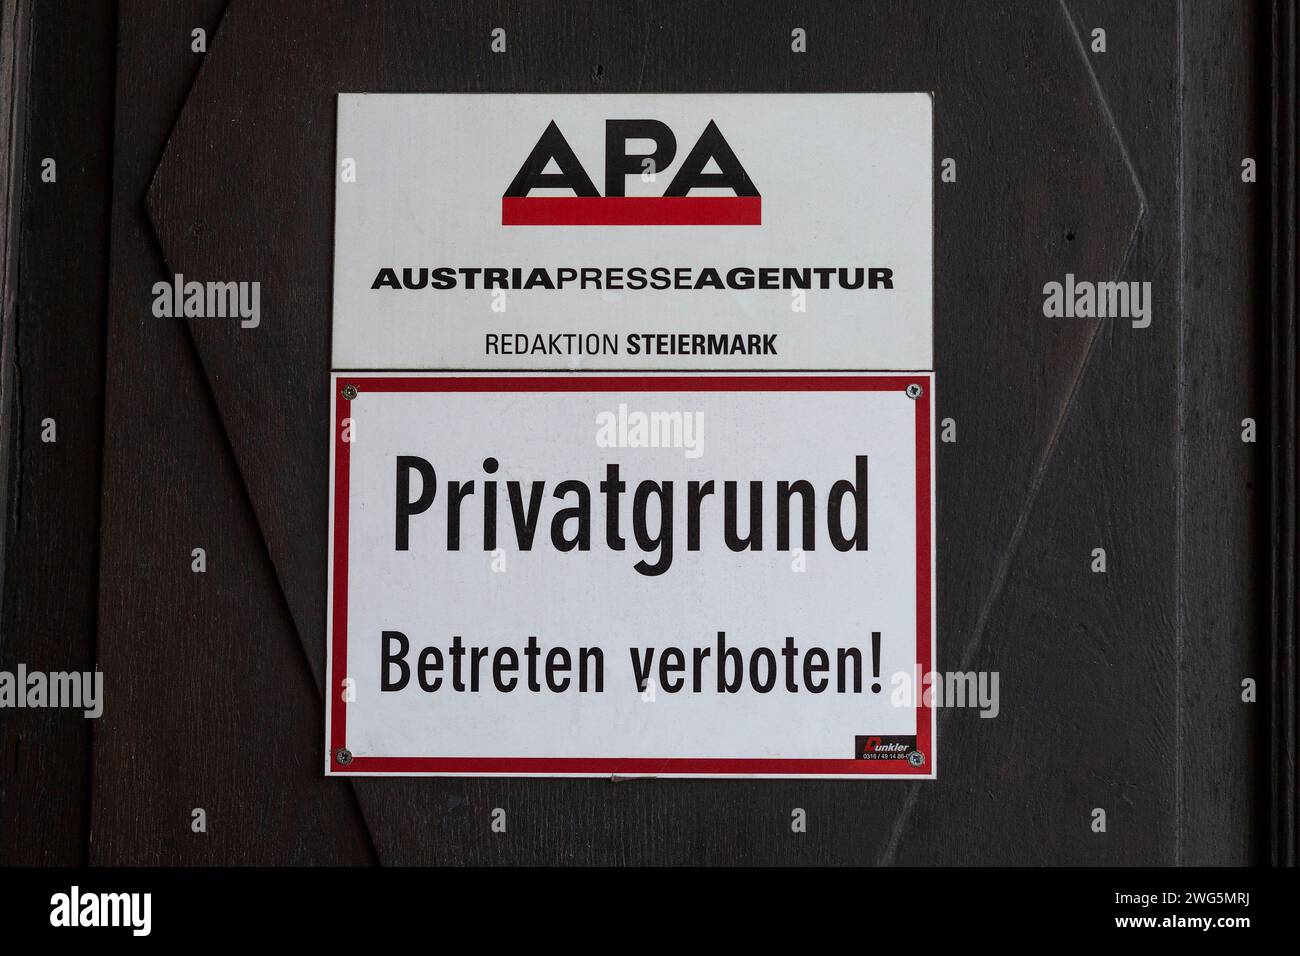 APA AustriaPresseAgentur Editorial Styria à Graz, Autriche Banque D'Images